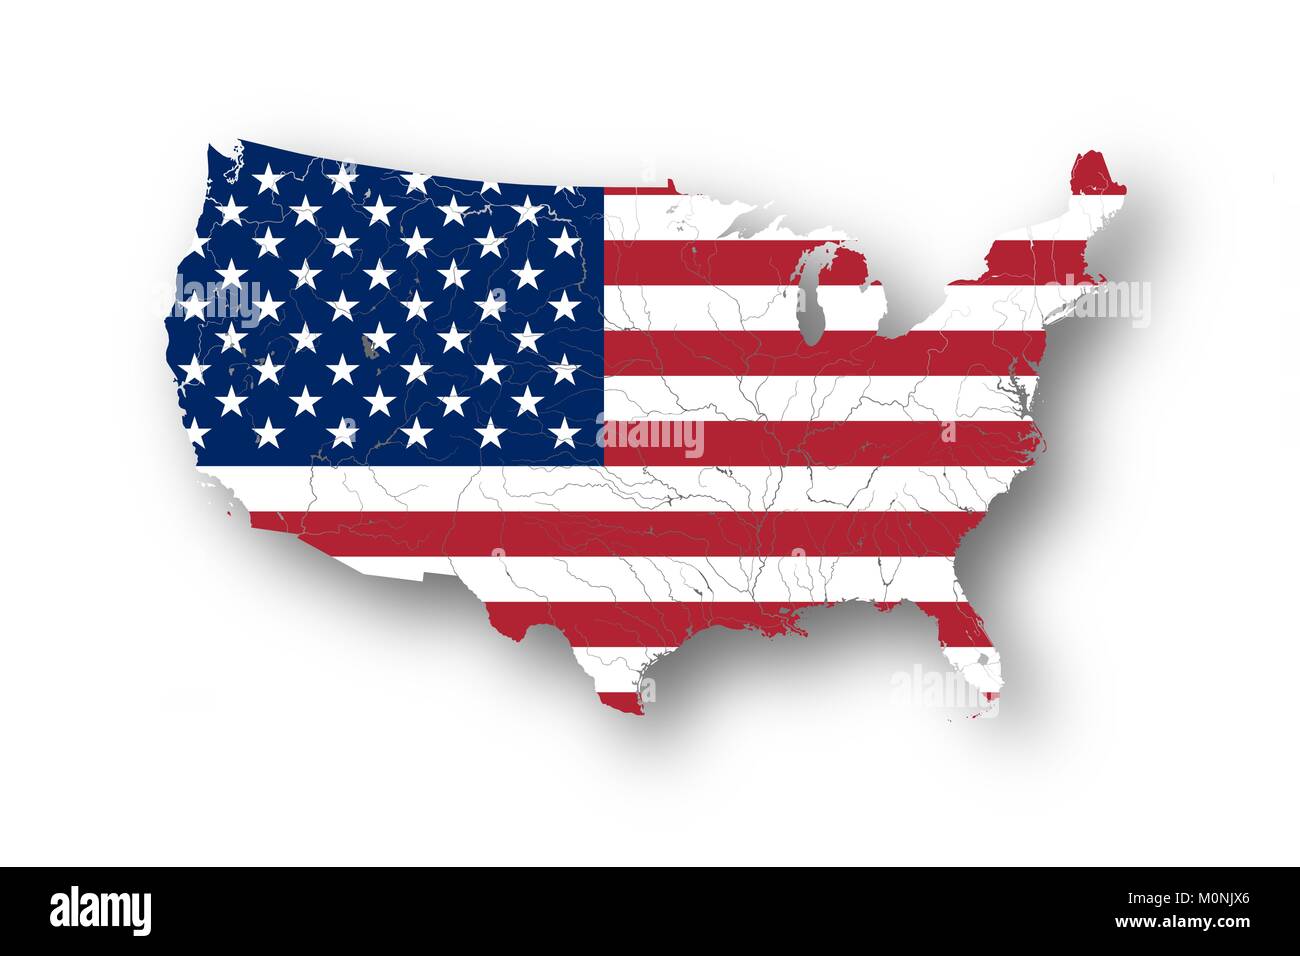 Carte des États-Unis d'Amérique avec le drapeau américain. Couleurs du drapeau sont bon. Les rivières et lacs sont indiqués. Illustration de Vecteur